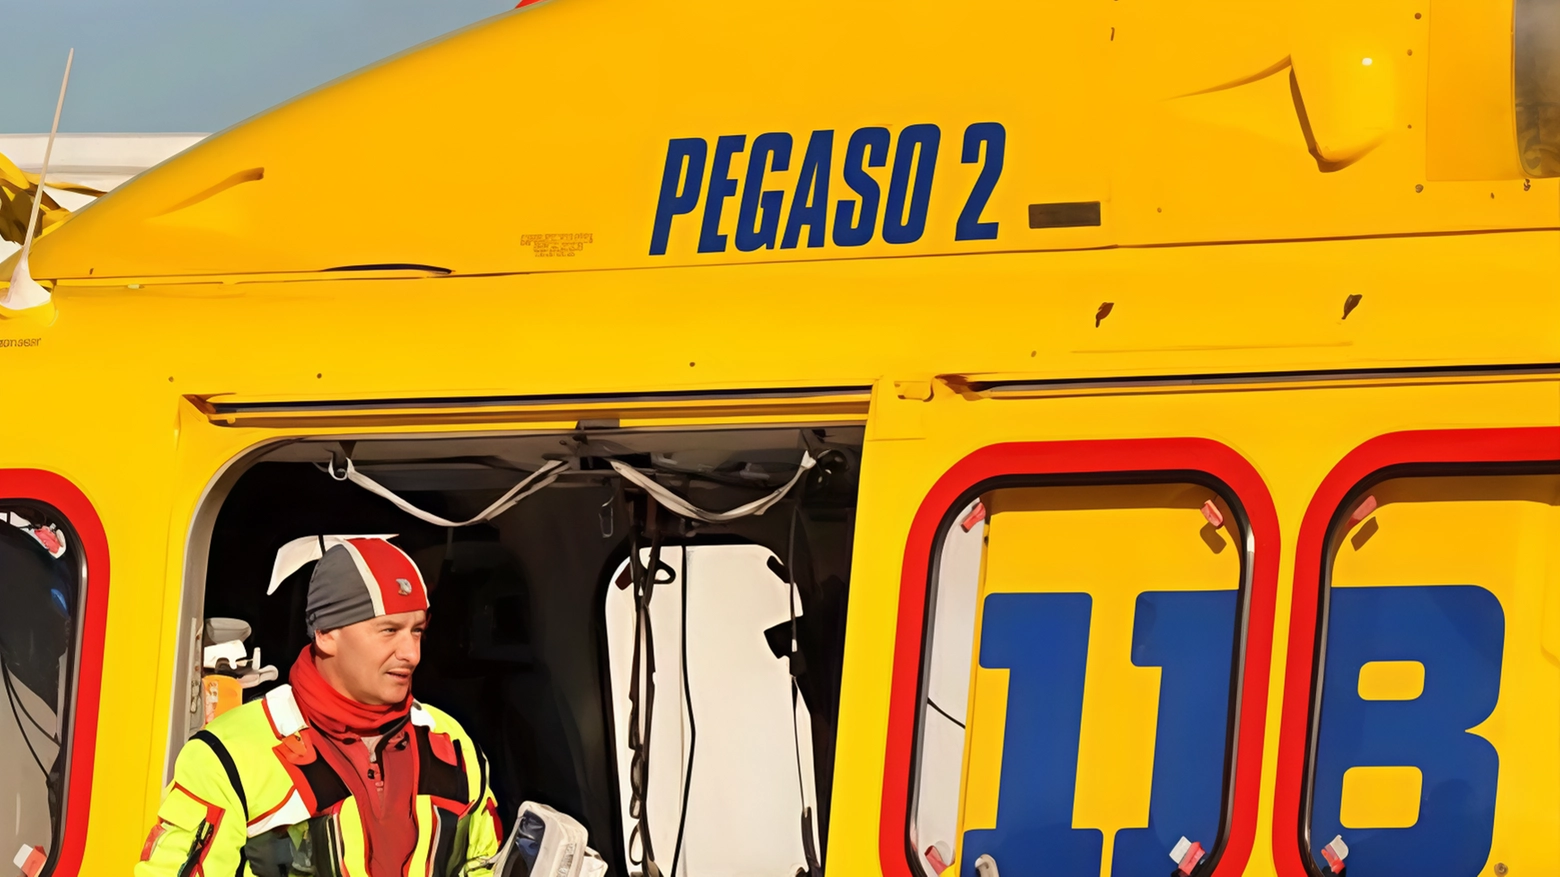 Due interventi dell'eliambulanza "Pegaso 2" a Grosseto per soccorrere due centauri caduti dalle moto durante gare di enduro. Entrambi trasferiti all'ospedale "Le Scotte" di Siena, con condizioni gravi ma stabili.